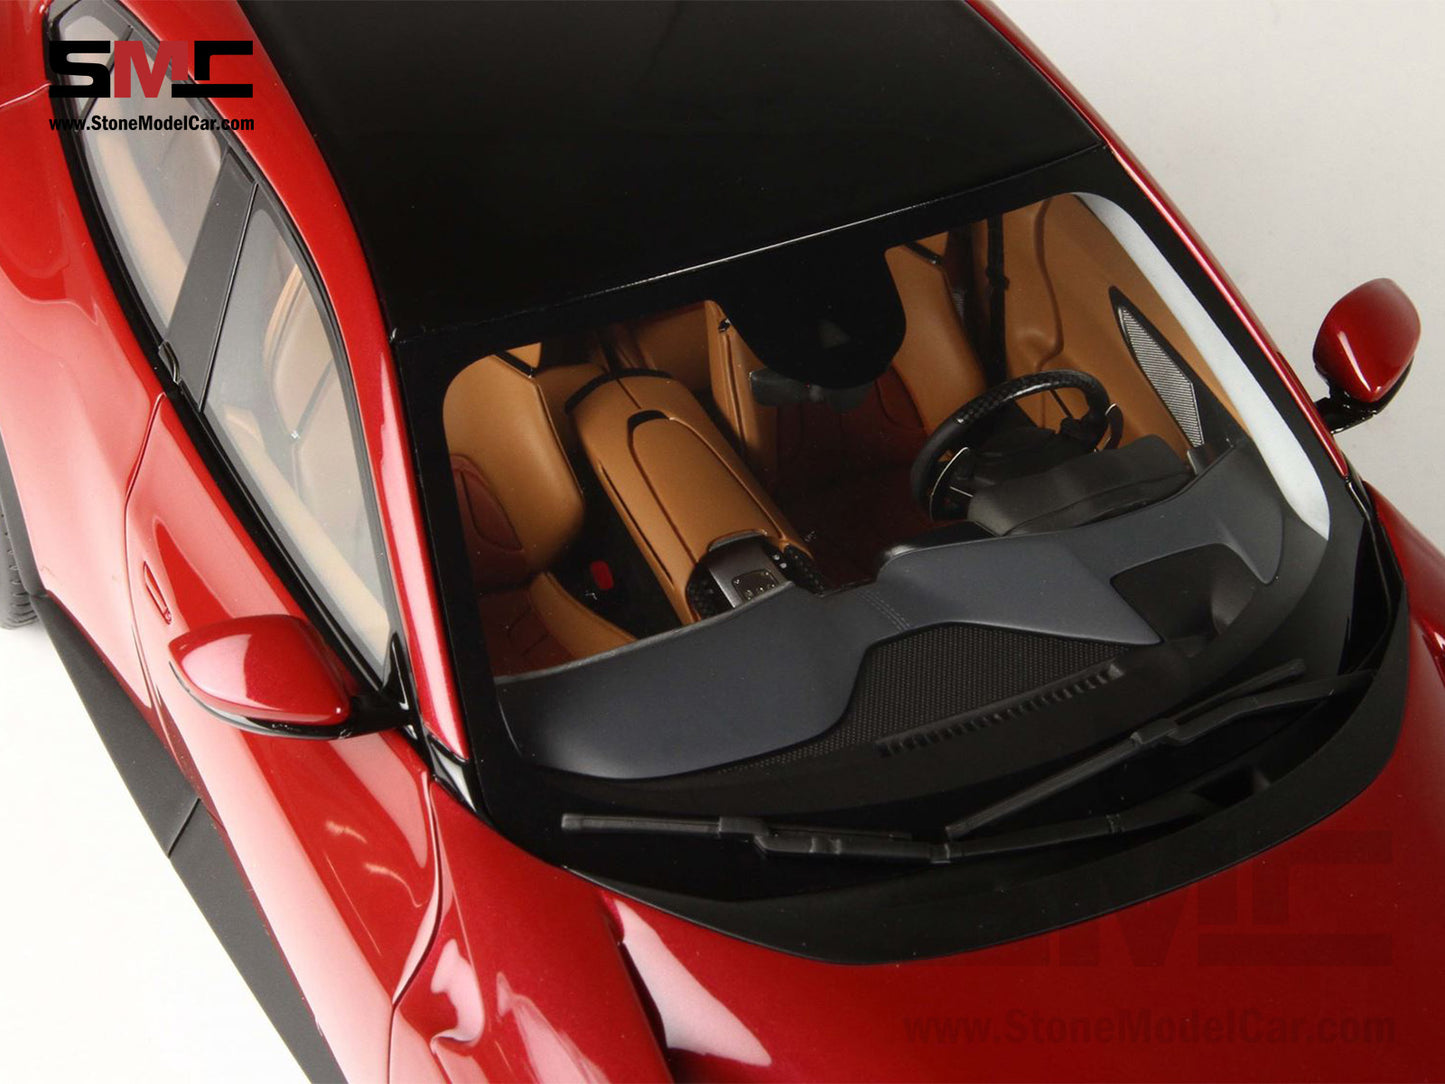 BBR High End Ferrari 1:18 Purosangue Metallic Red Mugello Color, Don't Call It a SUV